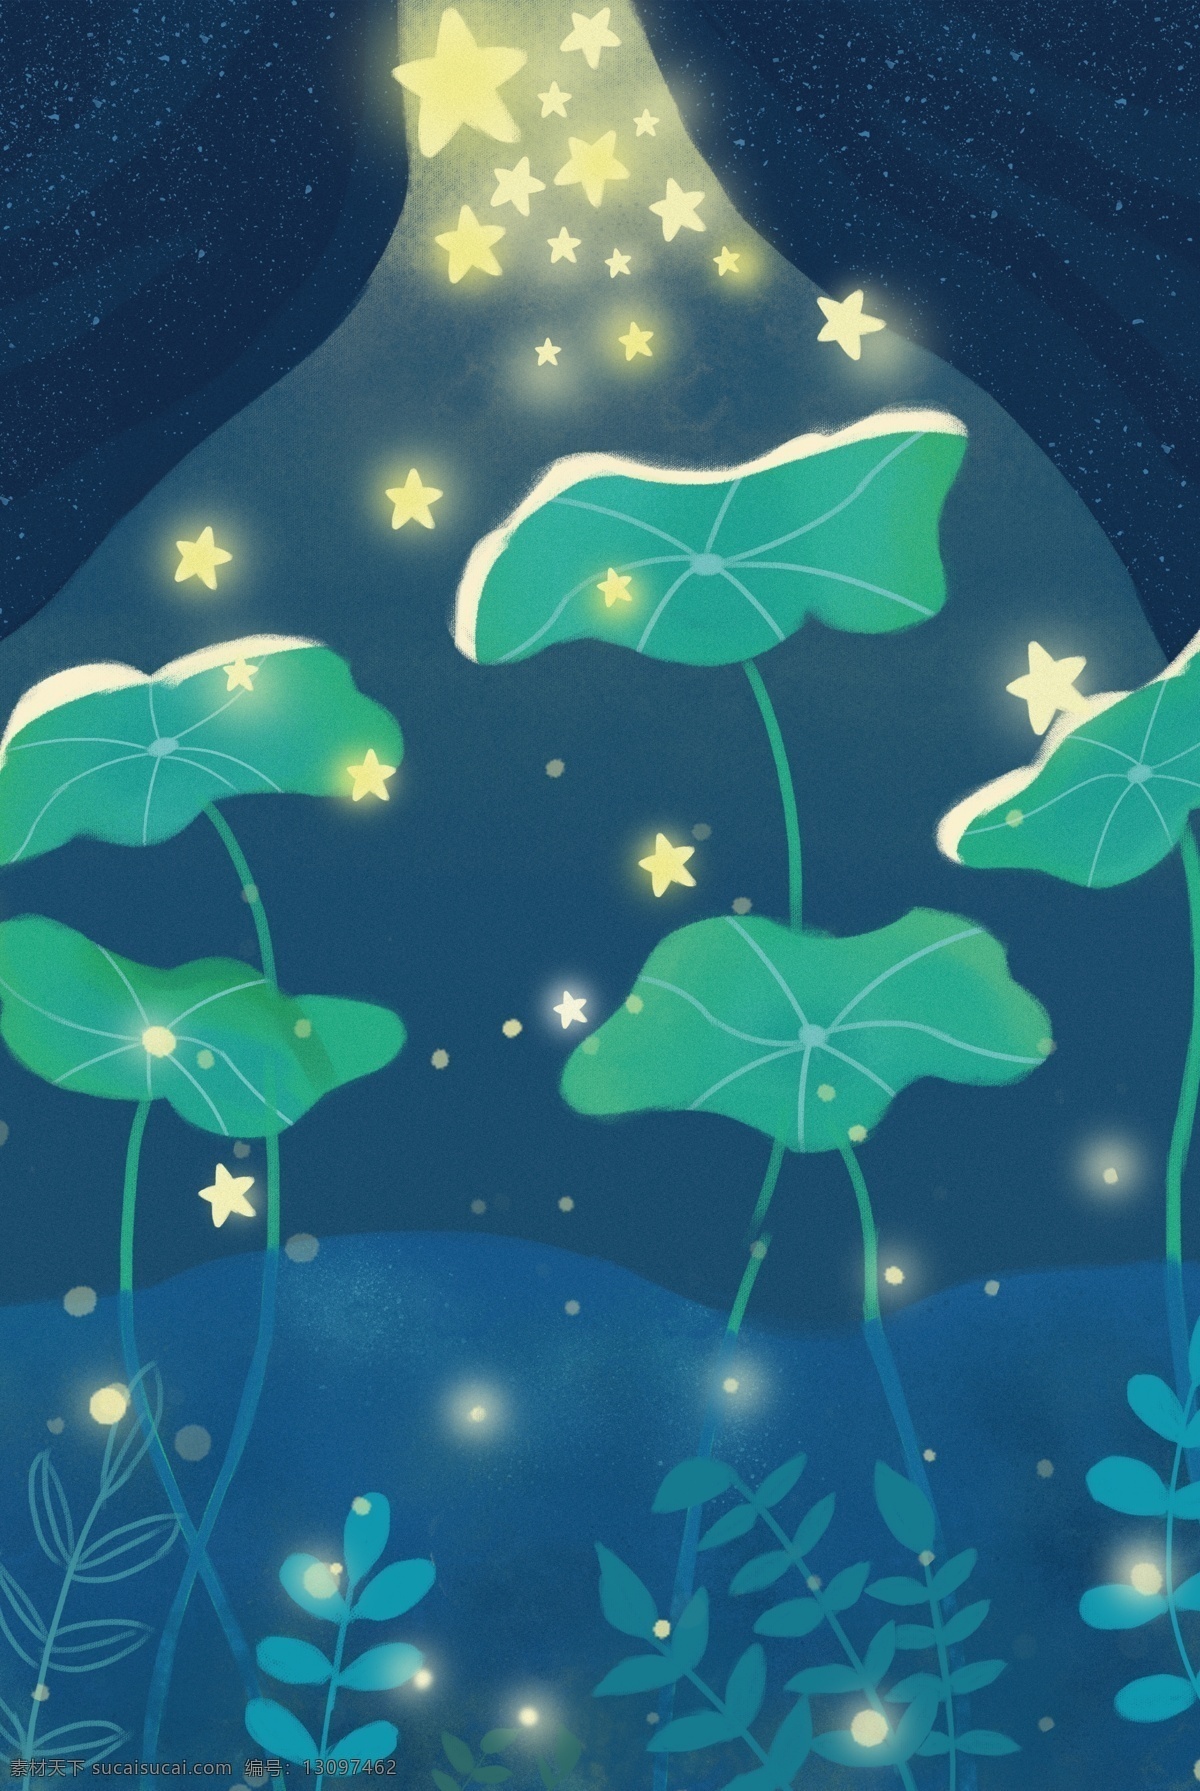 唯美 梦幻 星海 宣传 图 星星 荷叶 植物 水草 荷花 天空 五角星 卡通